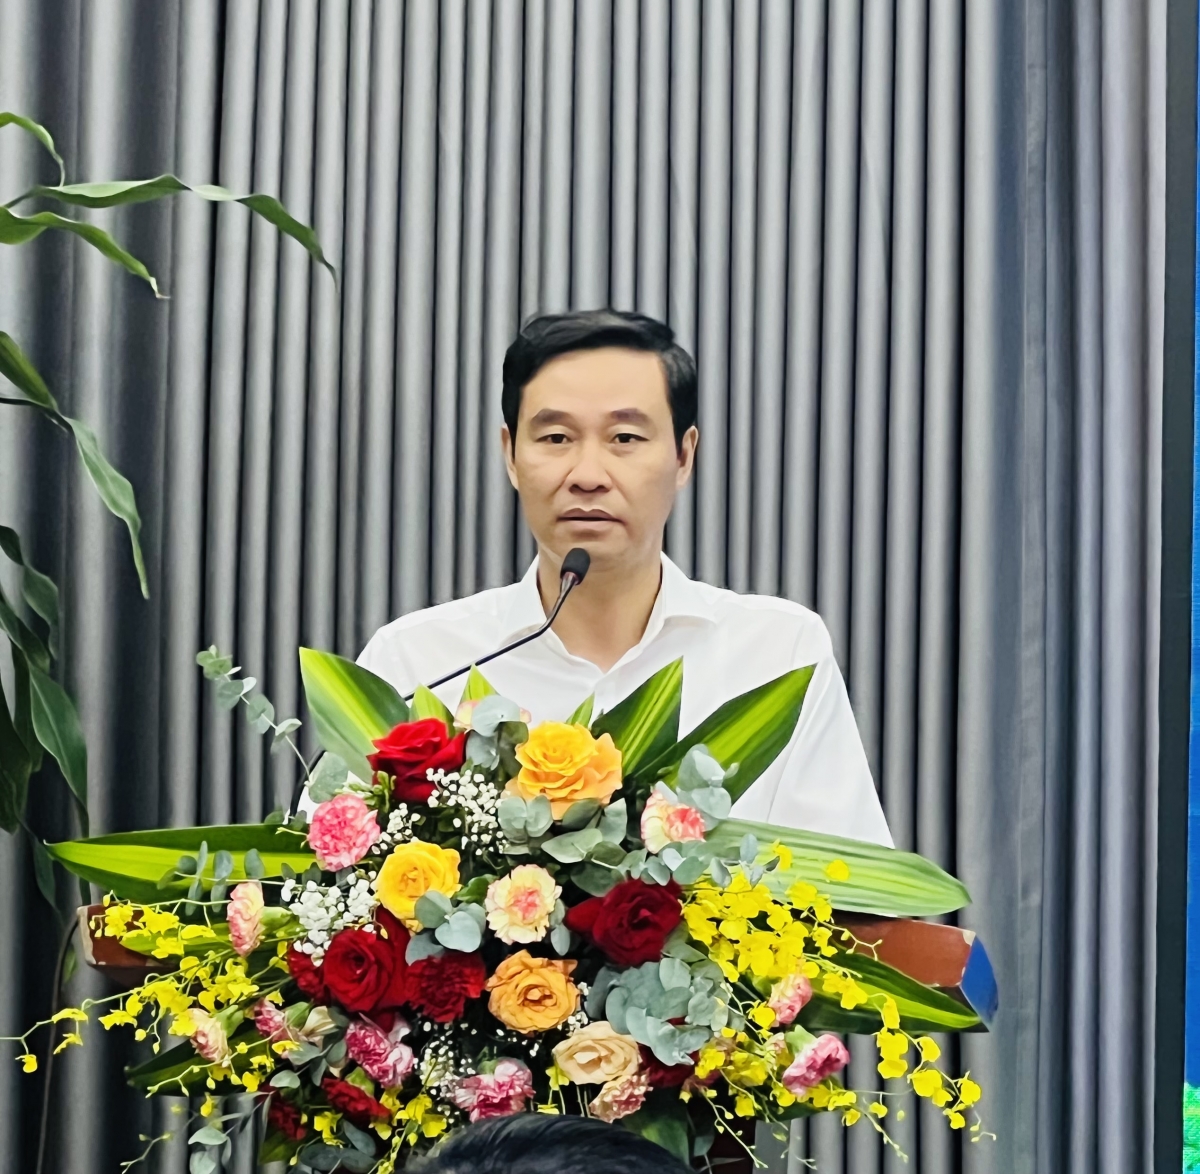 PGS.TS Nguyễn Hoàng Hải – Phó Giám đốc ĐHQG Hà Nội